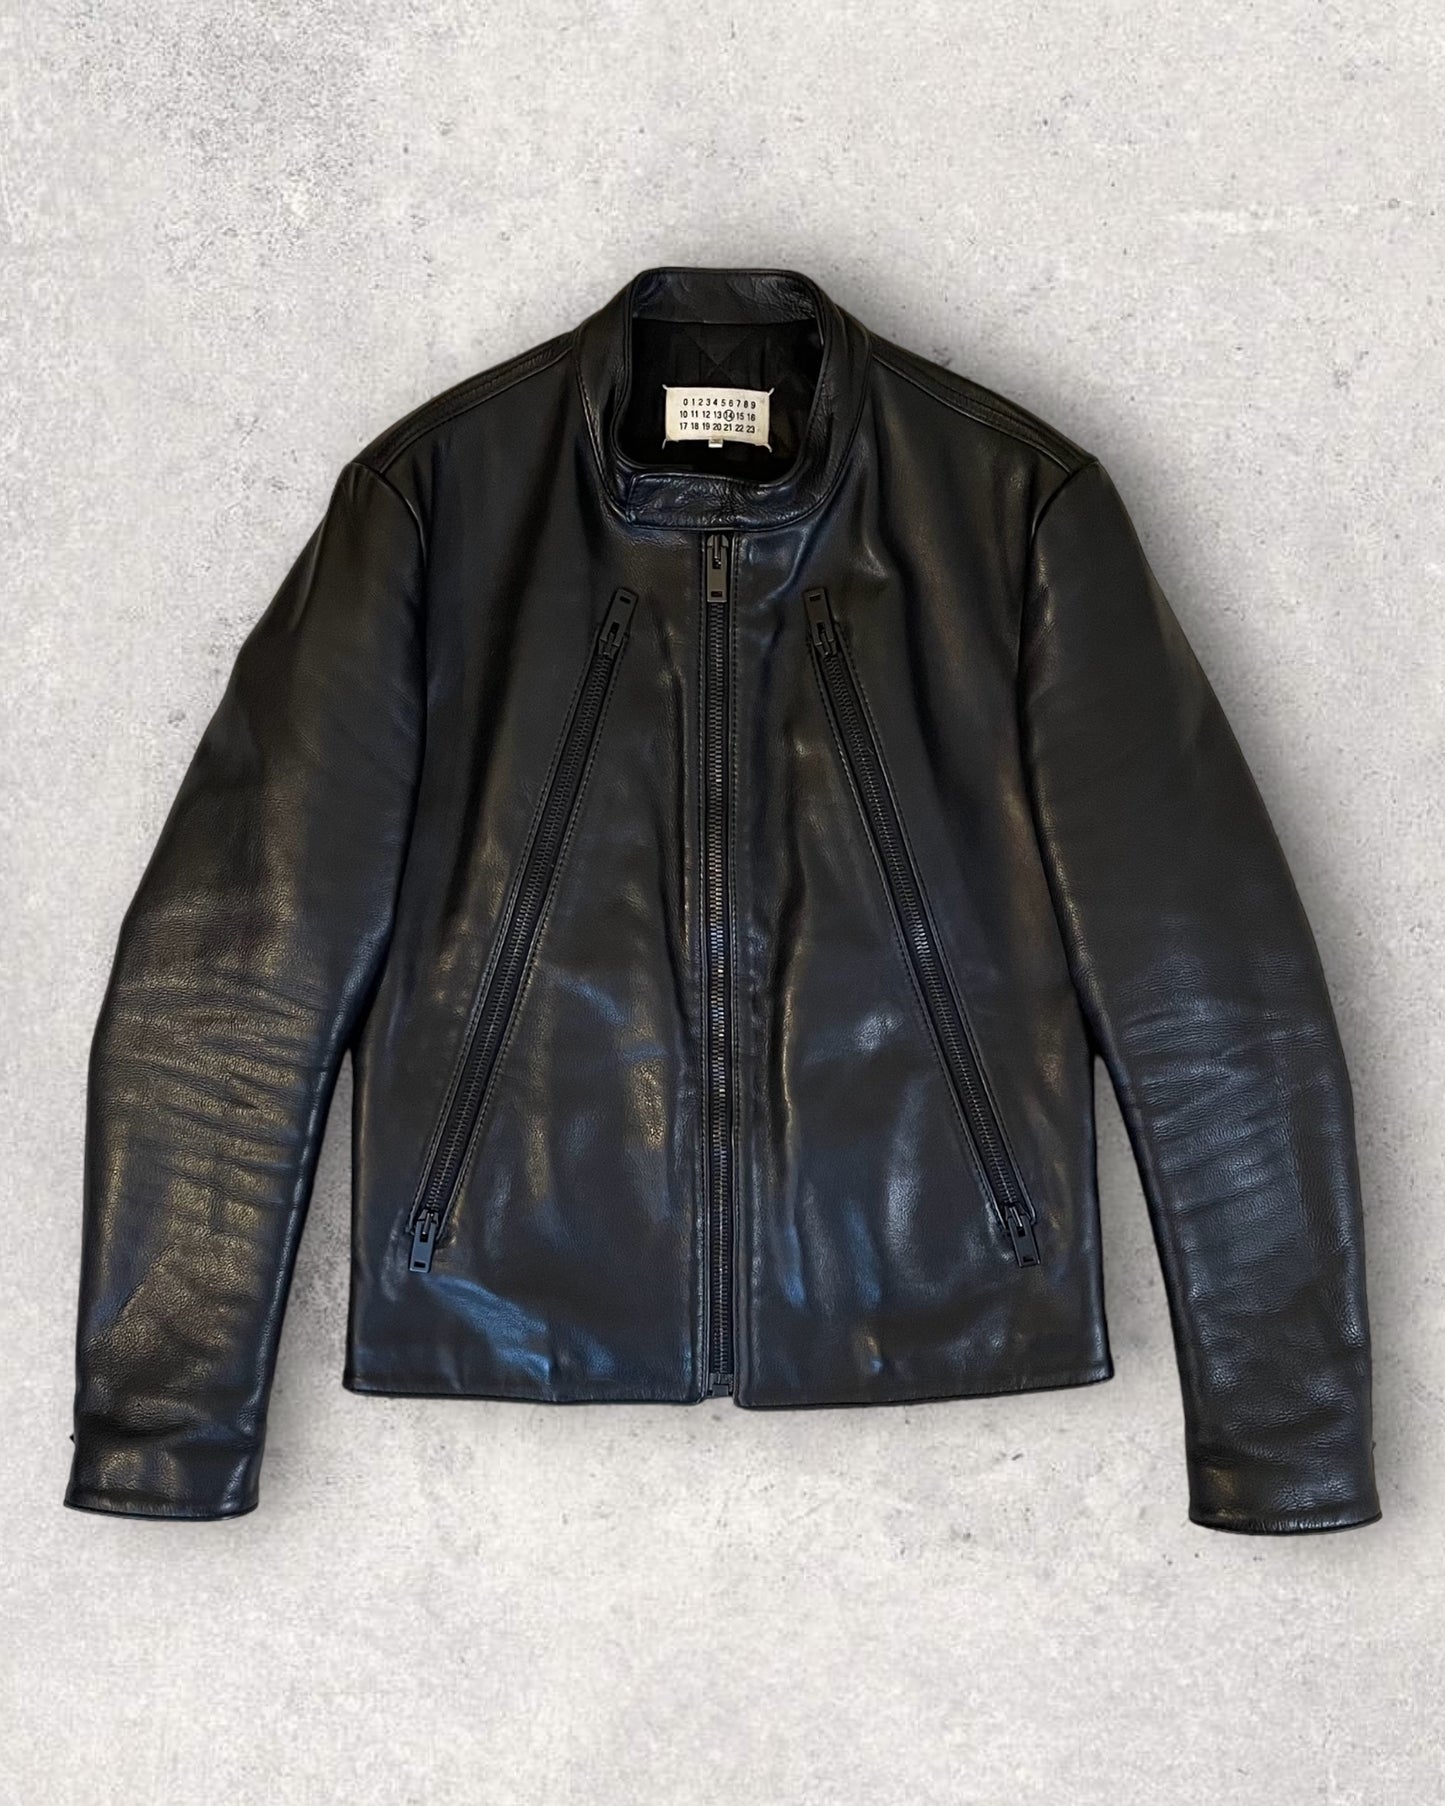 AW15 Maison Margiela Black 5-Zip Leather Jacket (M)